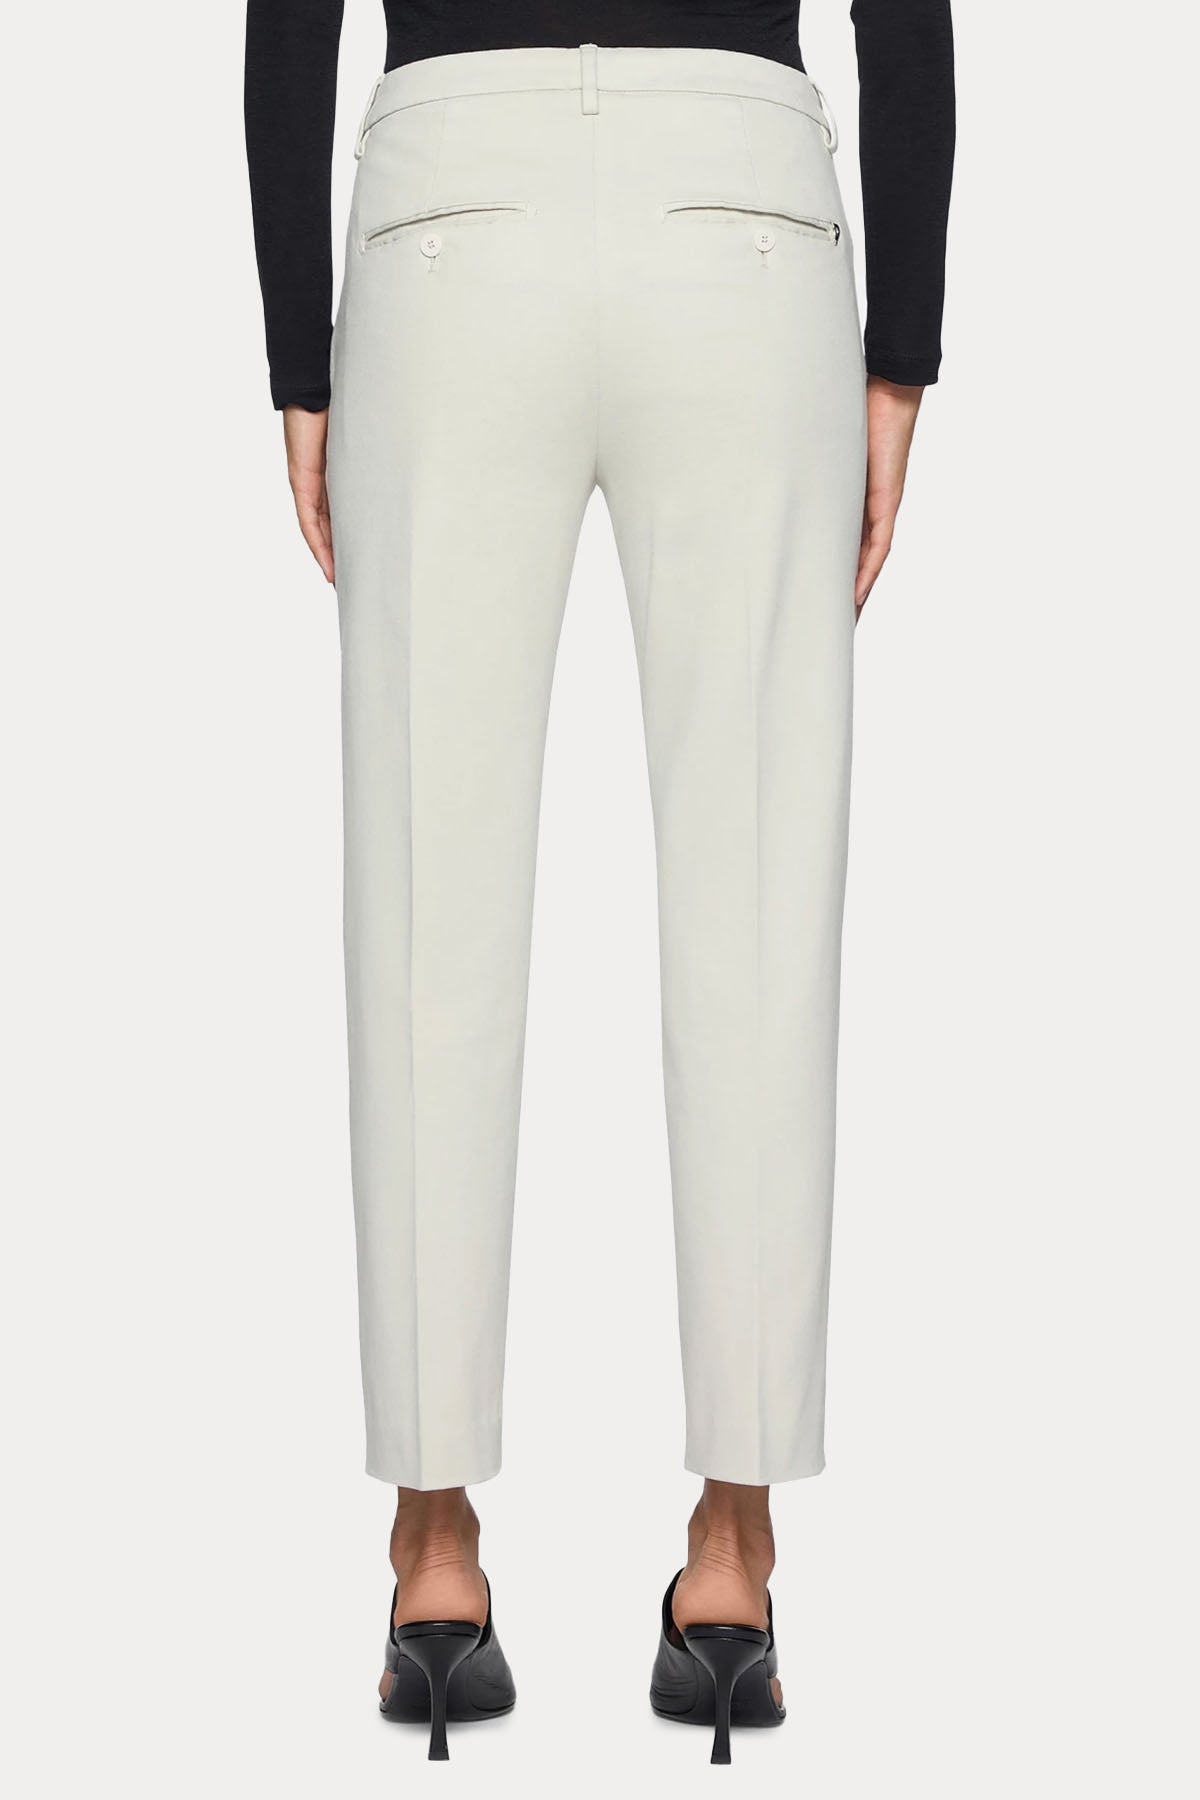 Dondup Loose Fit Yandan Cepli Streç Pantolon-Libas Trendy Fashion Store